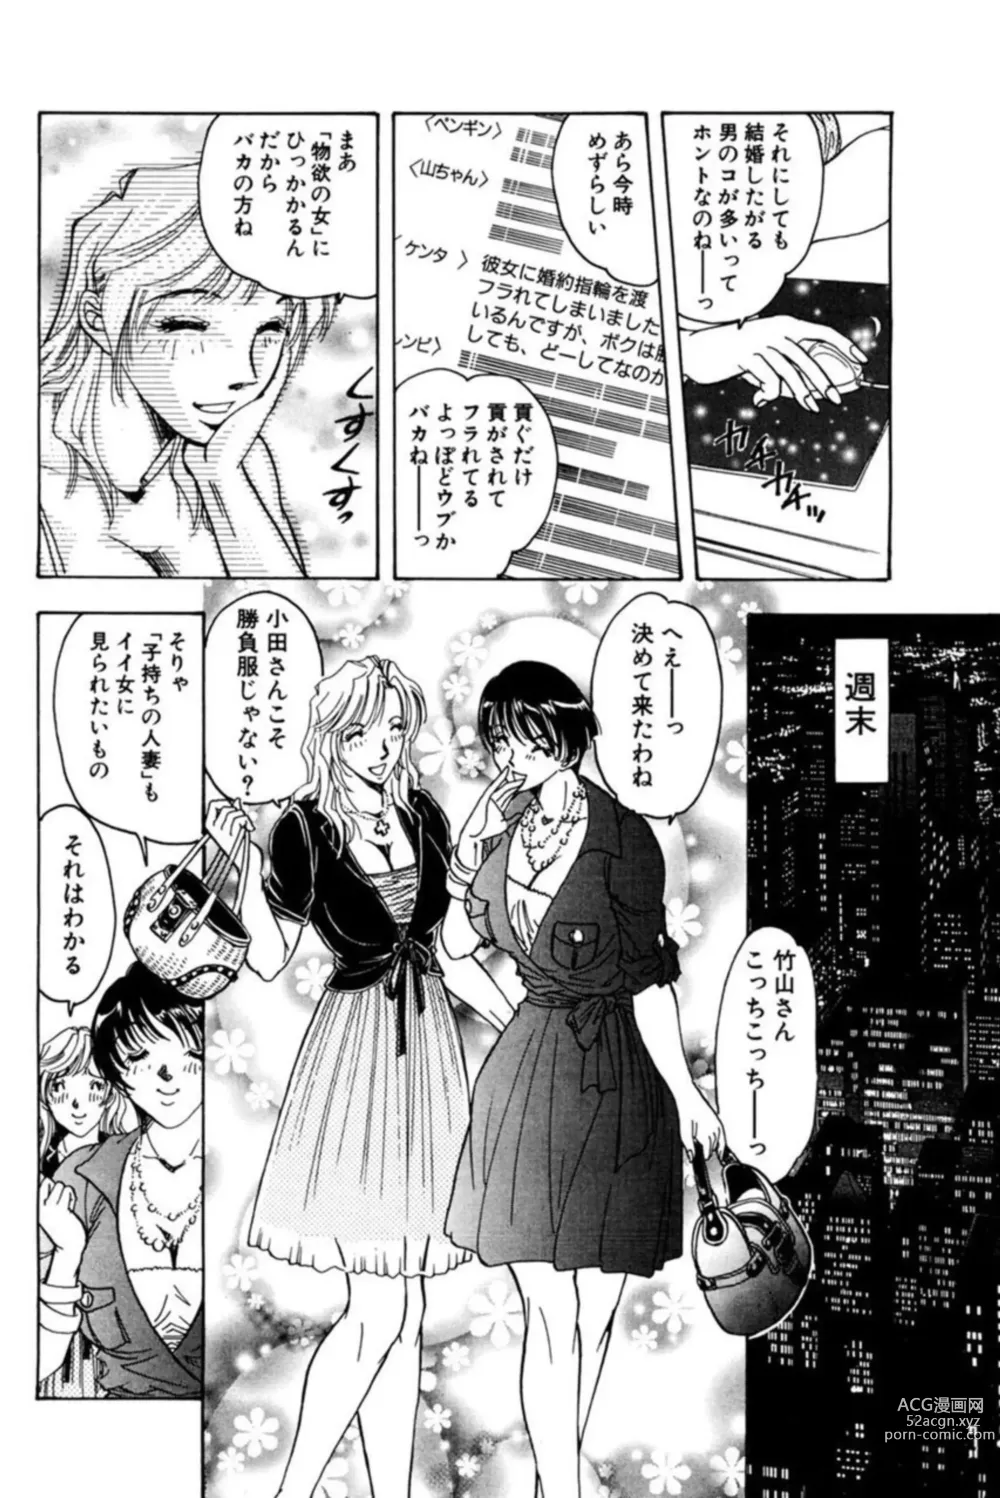 Page 12 of manga Nu meru Hitodzuma wa Aratana Shigeki o Sagashite Motomeru 1